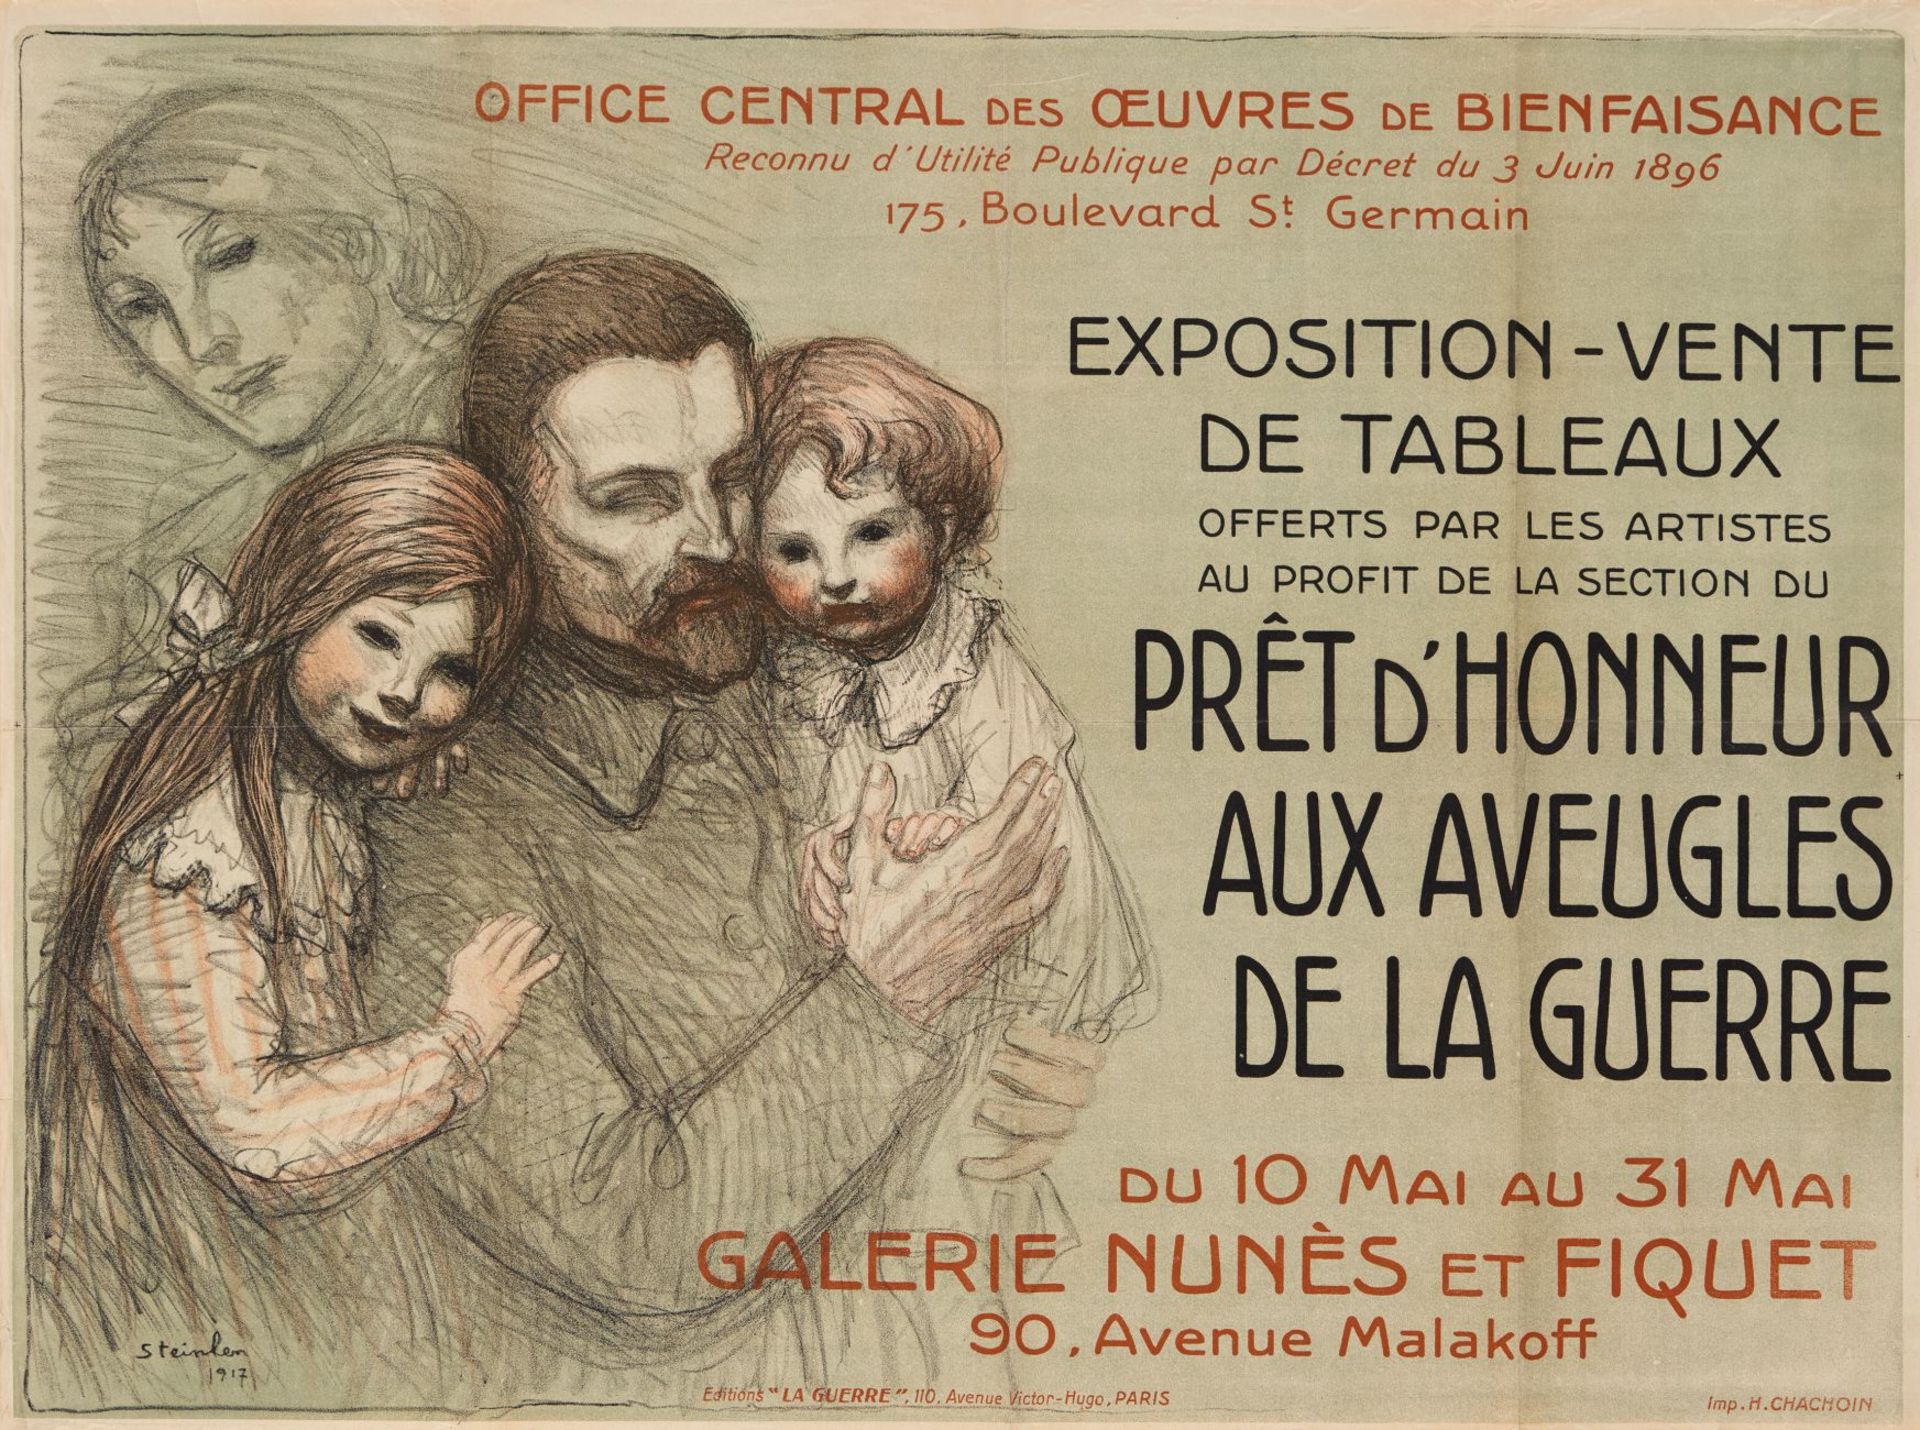 T. A. Steinlen. Exposition-Vente de Tableaux. Pret d'Honneur aux Aveugles. Farblithographie. 1917. P